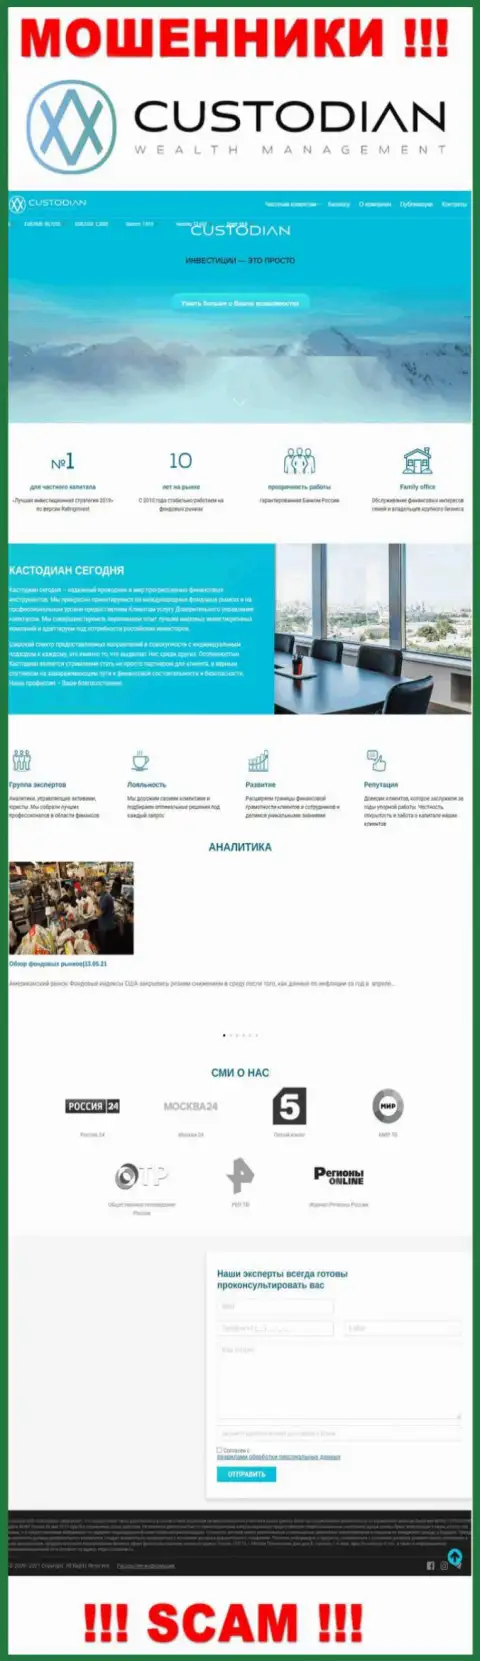 Скрин официального веб-сервиса мошеннической компании Кустодиан